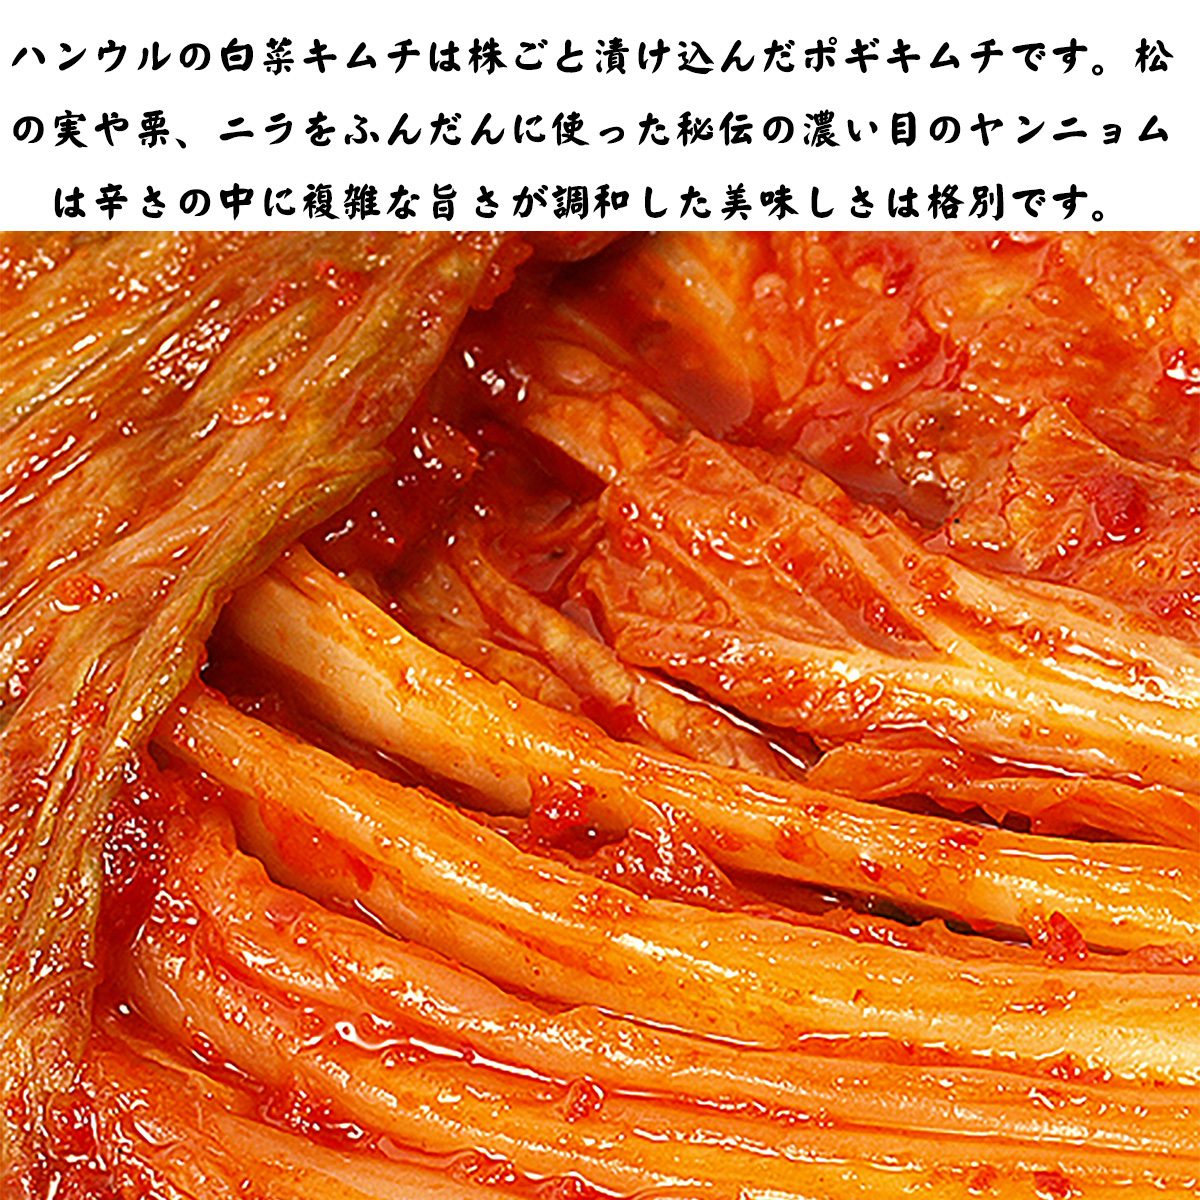  китайская капуста кимчи ....1kg Корея рукоятка uru Корея прямой импорт . местного производства кимчи pogi кимчи китайская капуста 